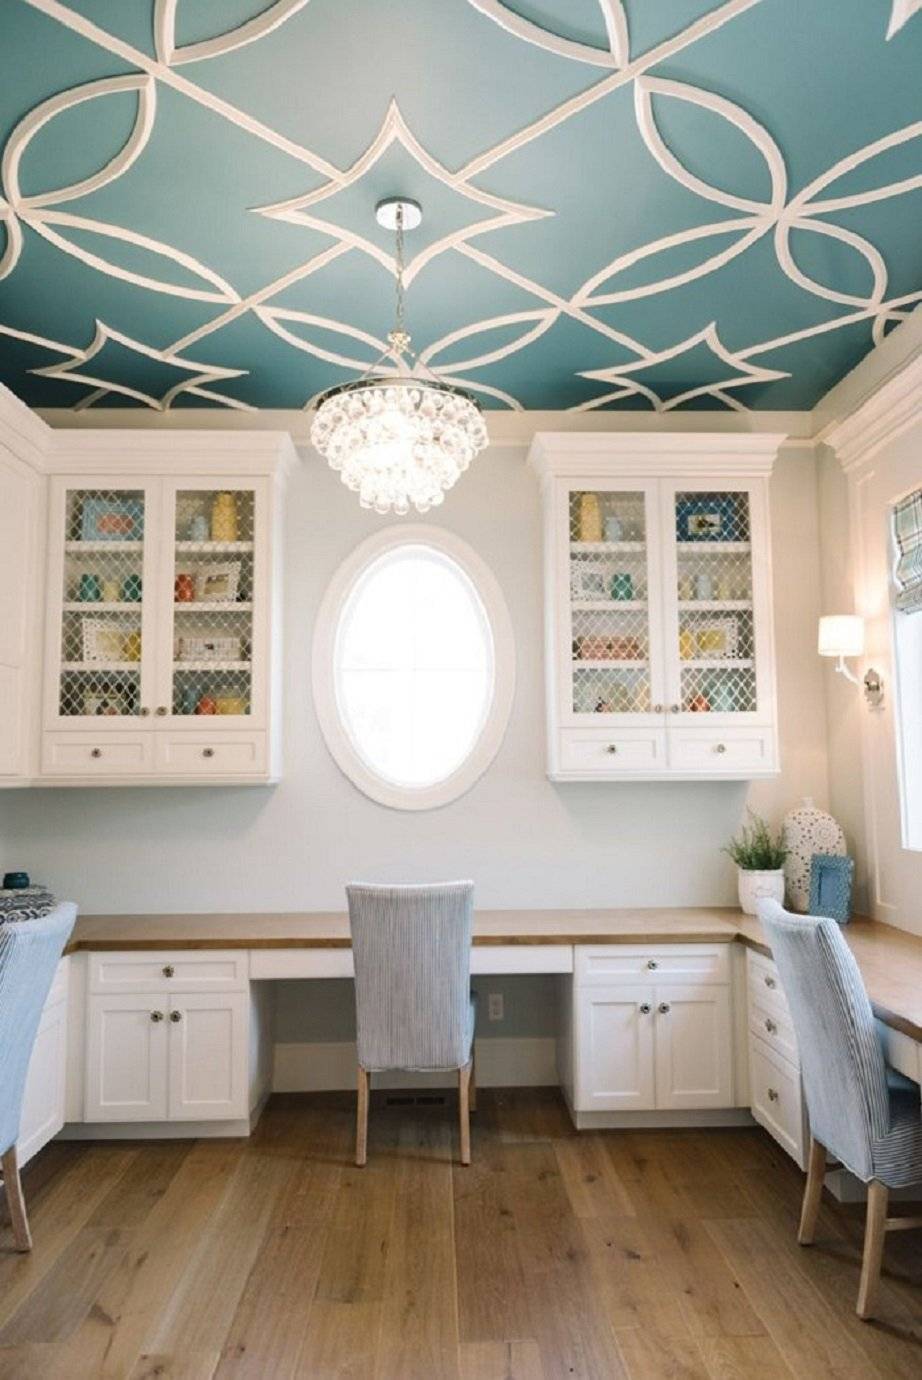 Дизайн потолка своими руками: как сделать красивое оформление в квартире из гипсокартона, пенопласта, ткани и других материалов, а также идеи, описание и фото